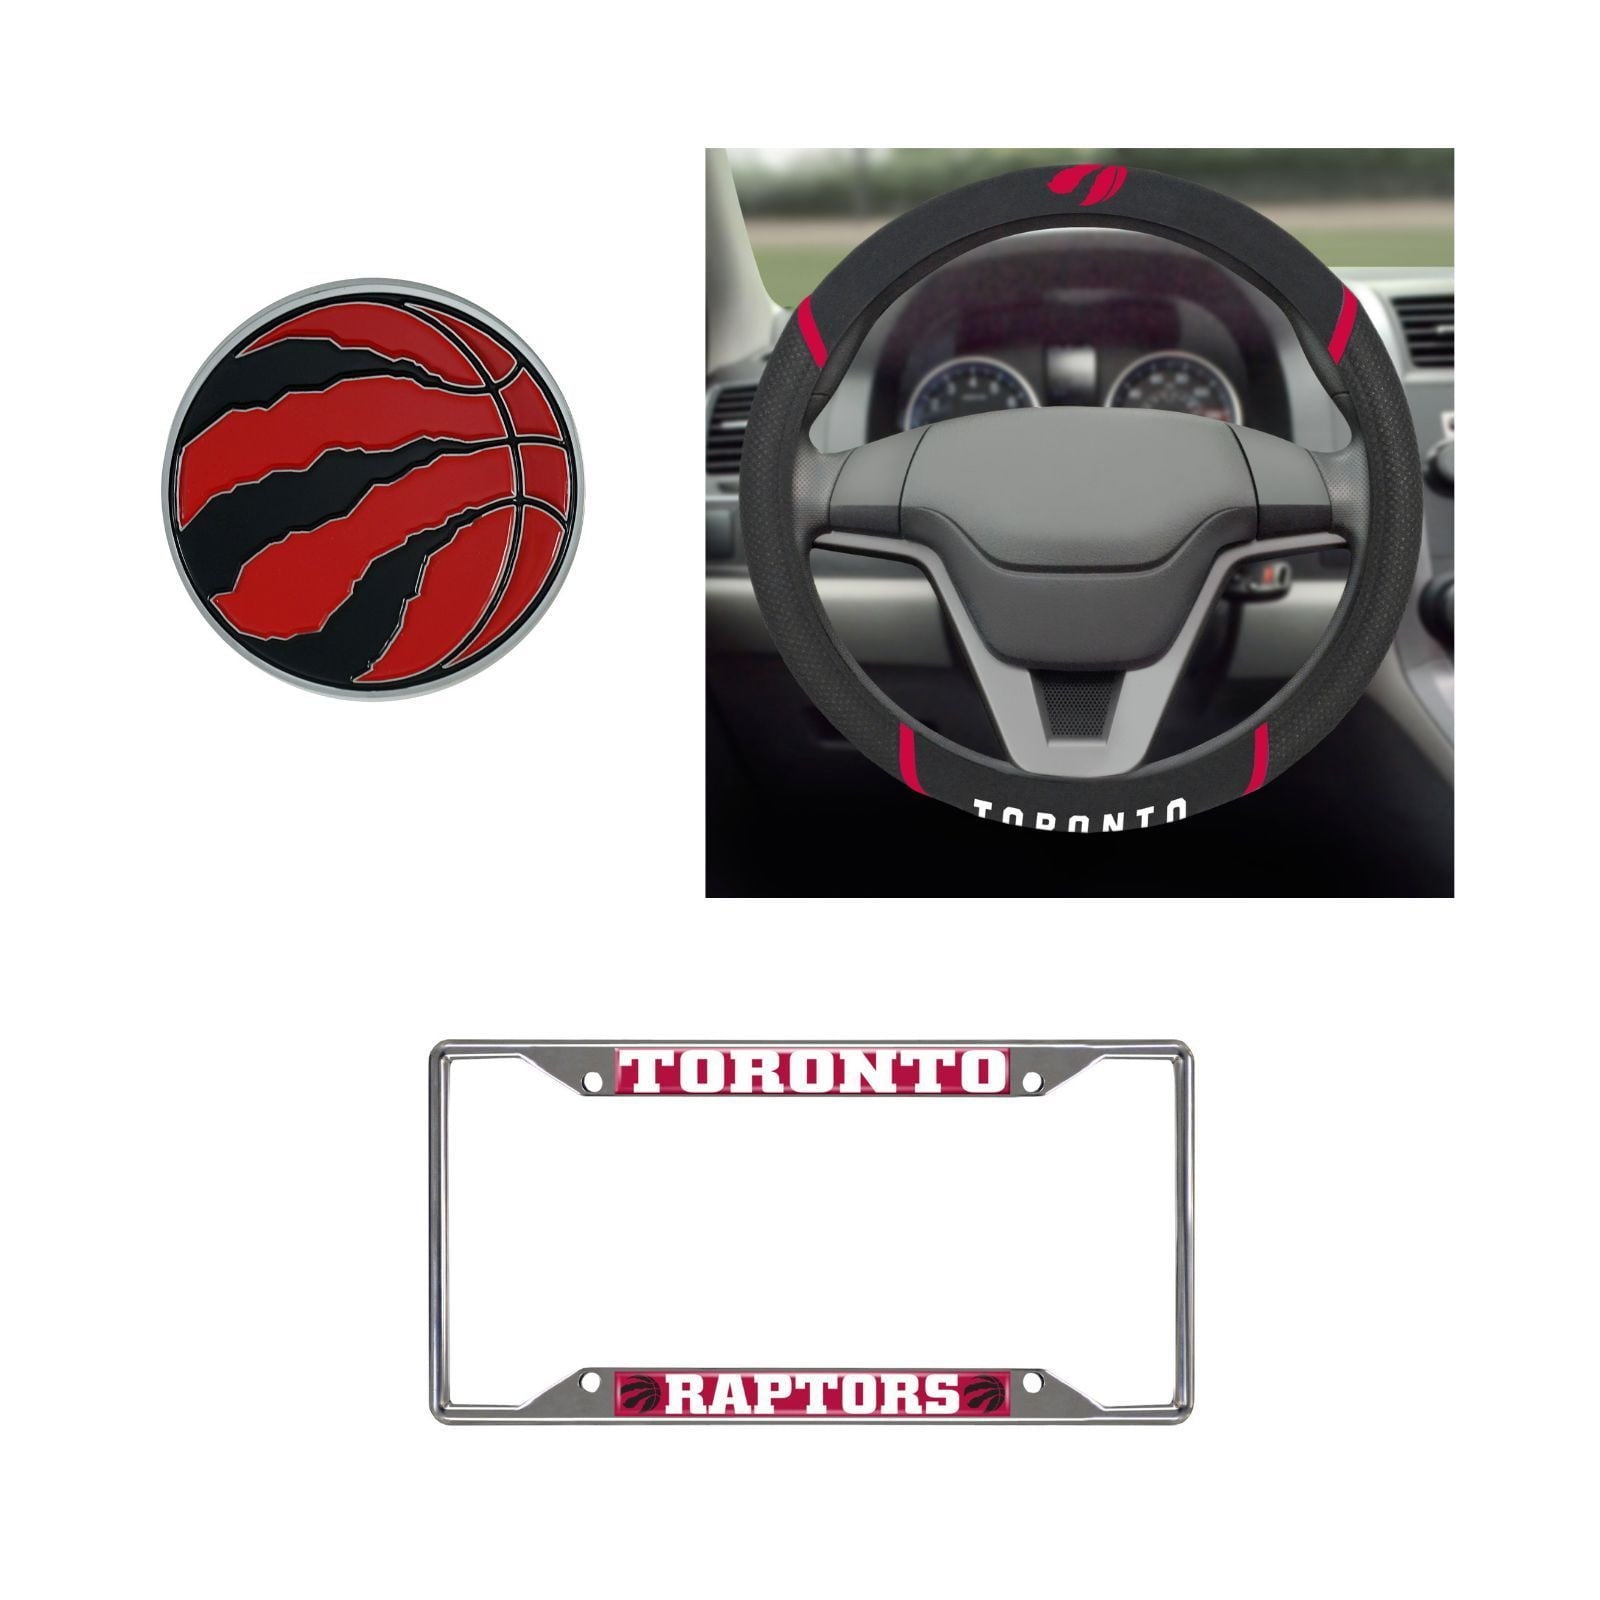 Toronto Raptors Steering Wheel Cover, License Plate Frame, 3D Color Emblem